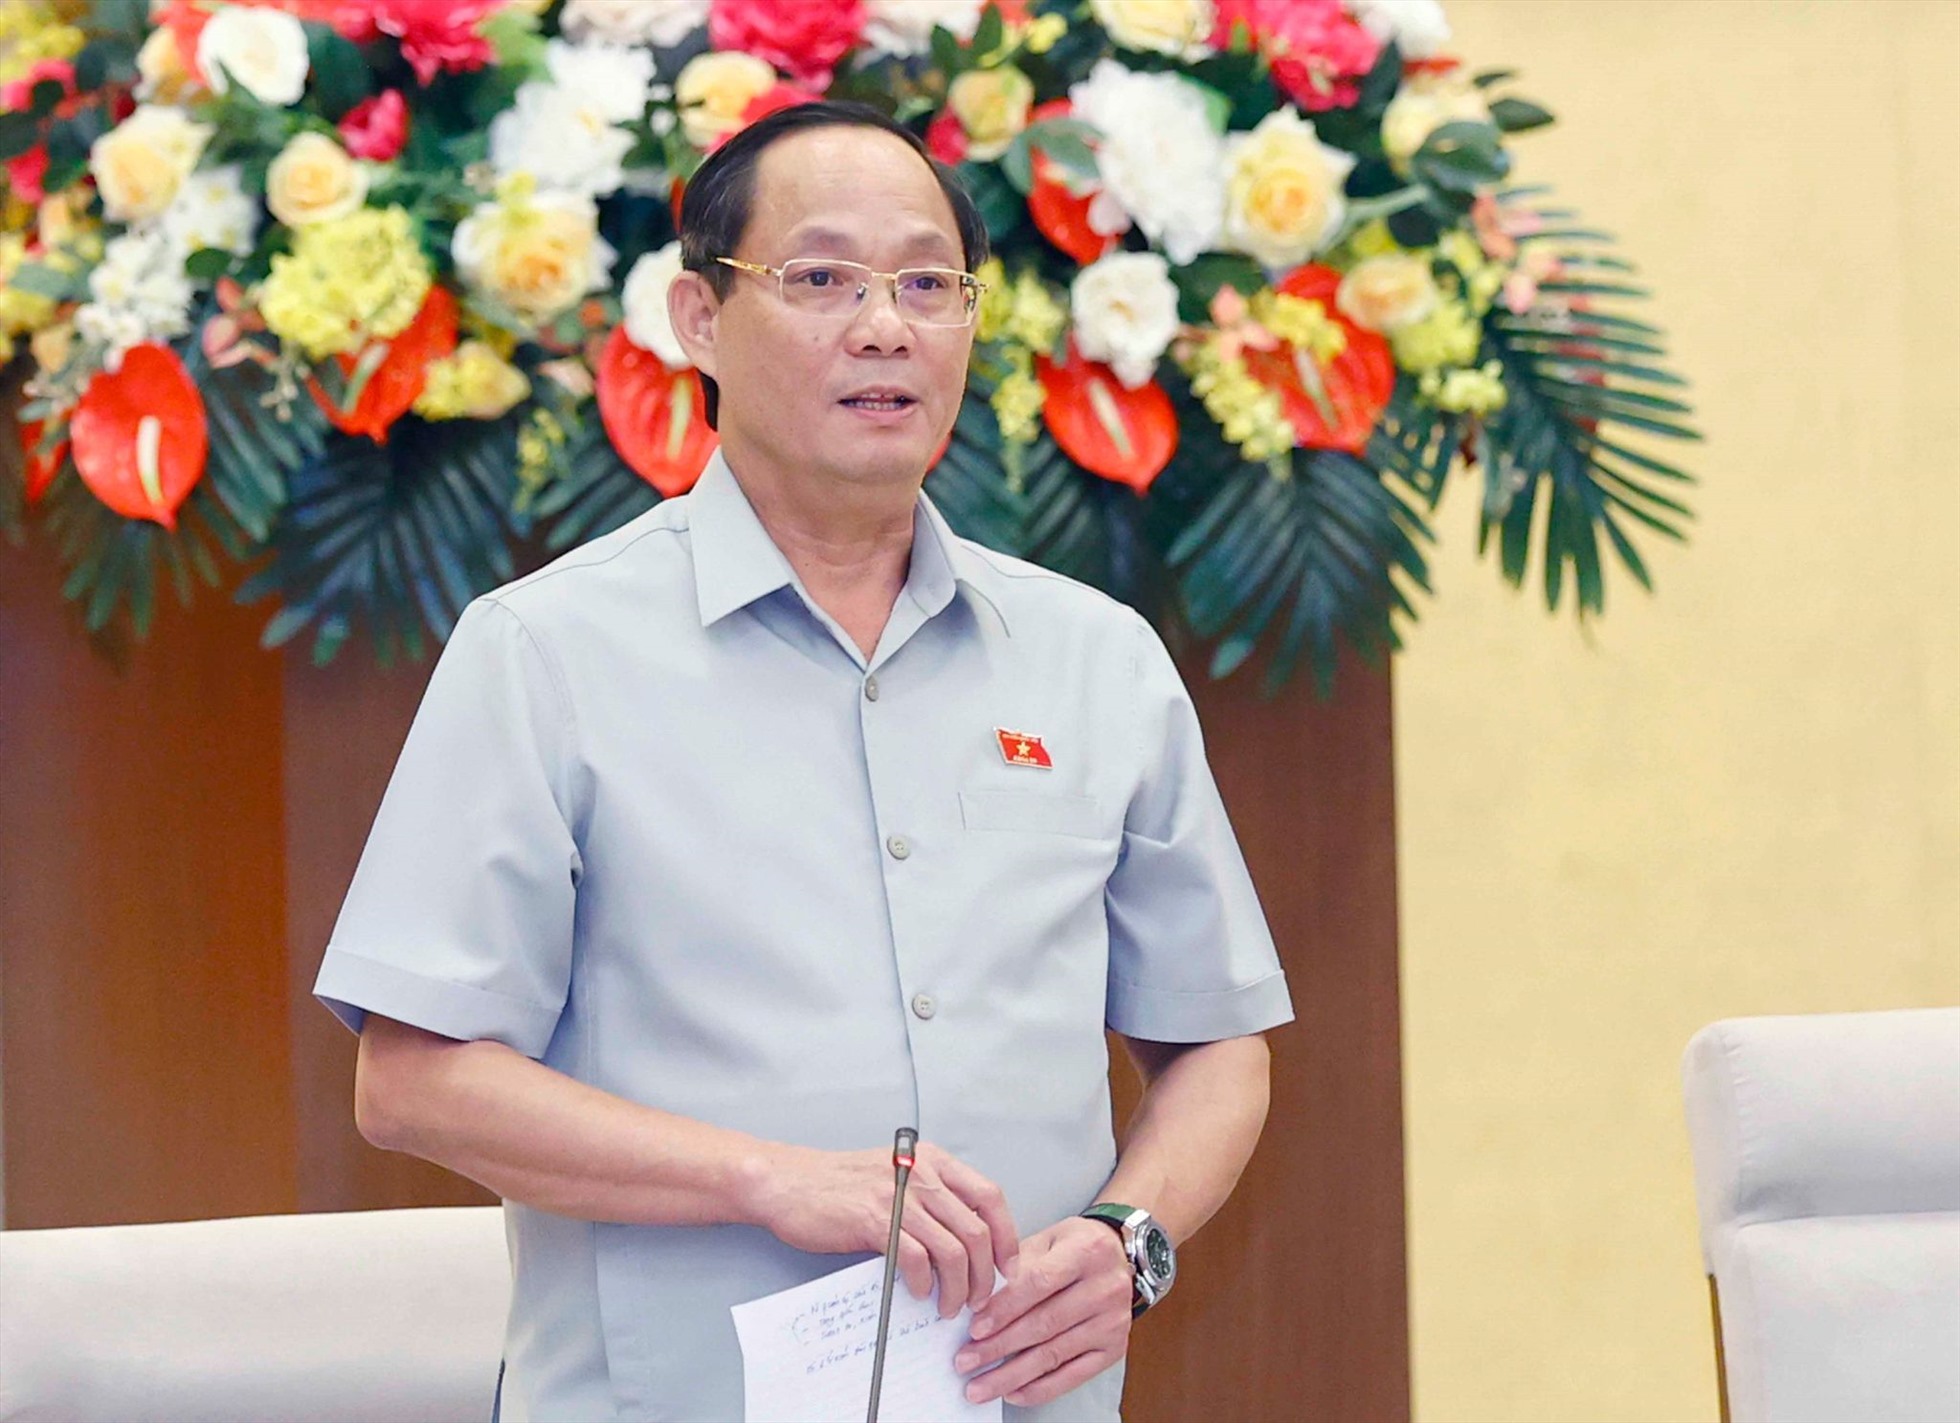 Phó Chủ tịch Quốc hội Trần Quang Phương.